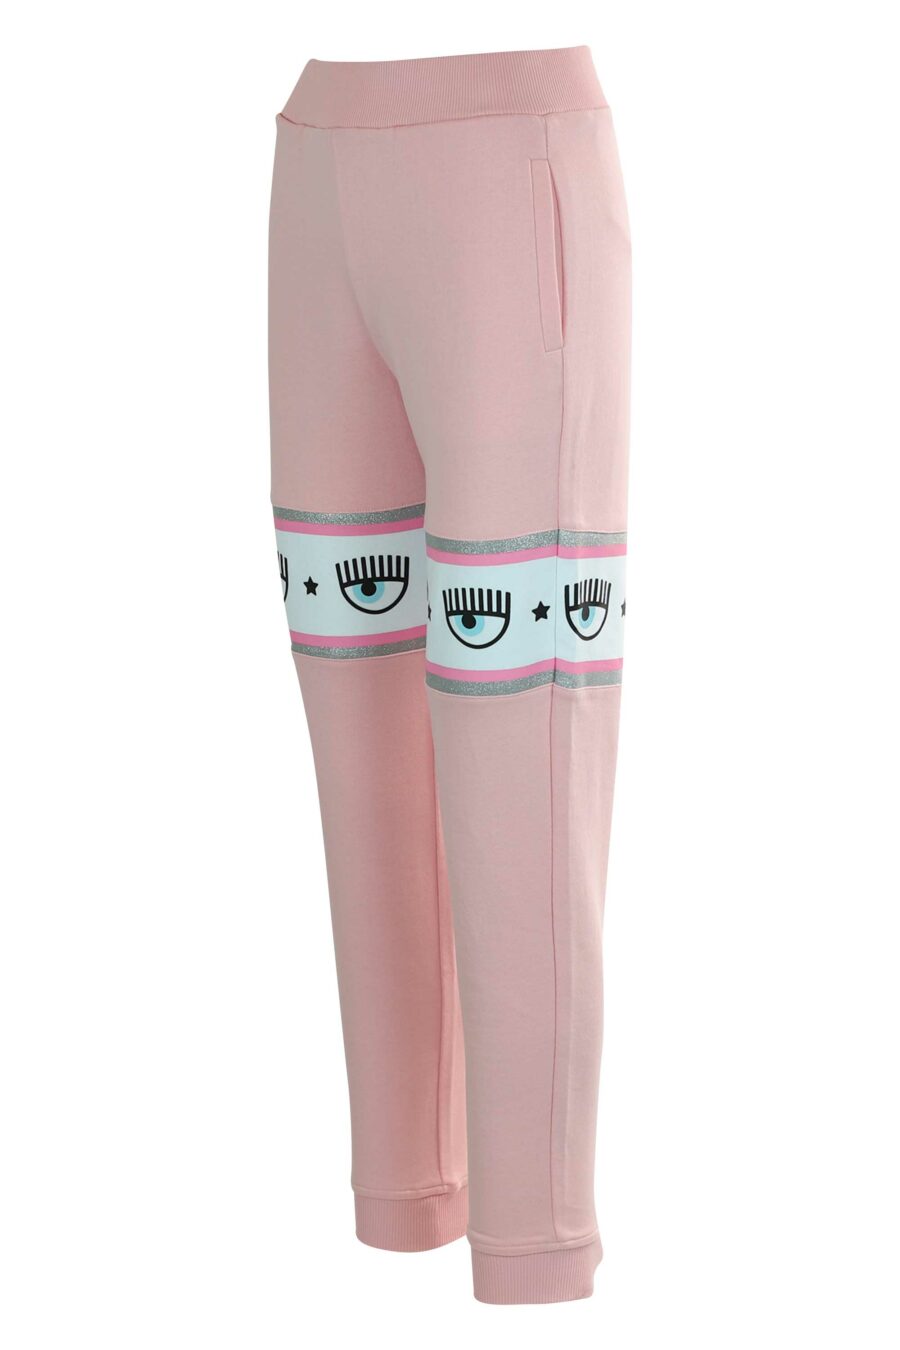 Pantalón de chándal rosa con capucha y logo en cinta blanco y plateado” - 8052672419163 2